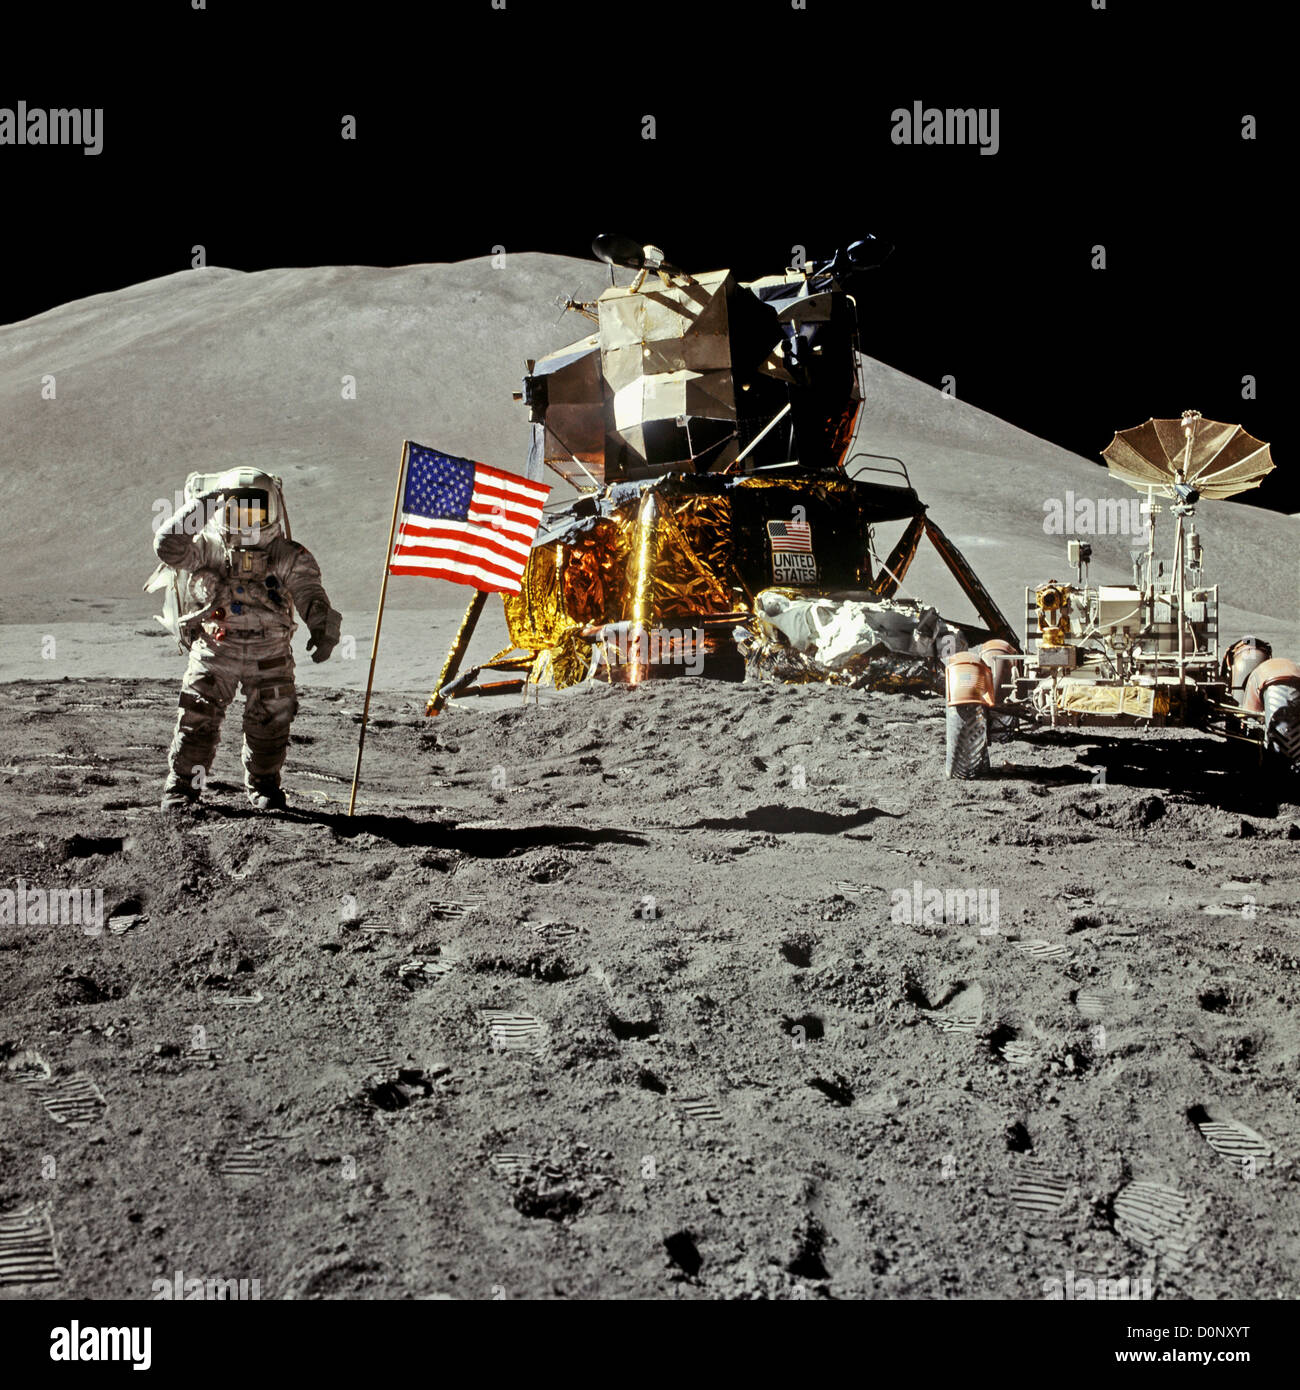 Saluant l'astronaute Apollo 15 sur la Lune avec le rover et Falcon Lunar Lander Banque D'Images